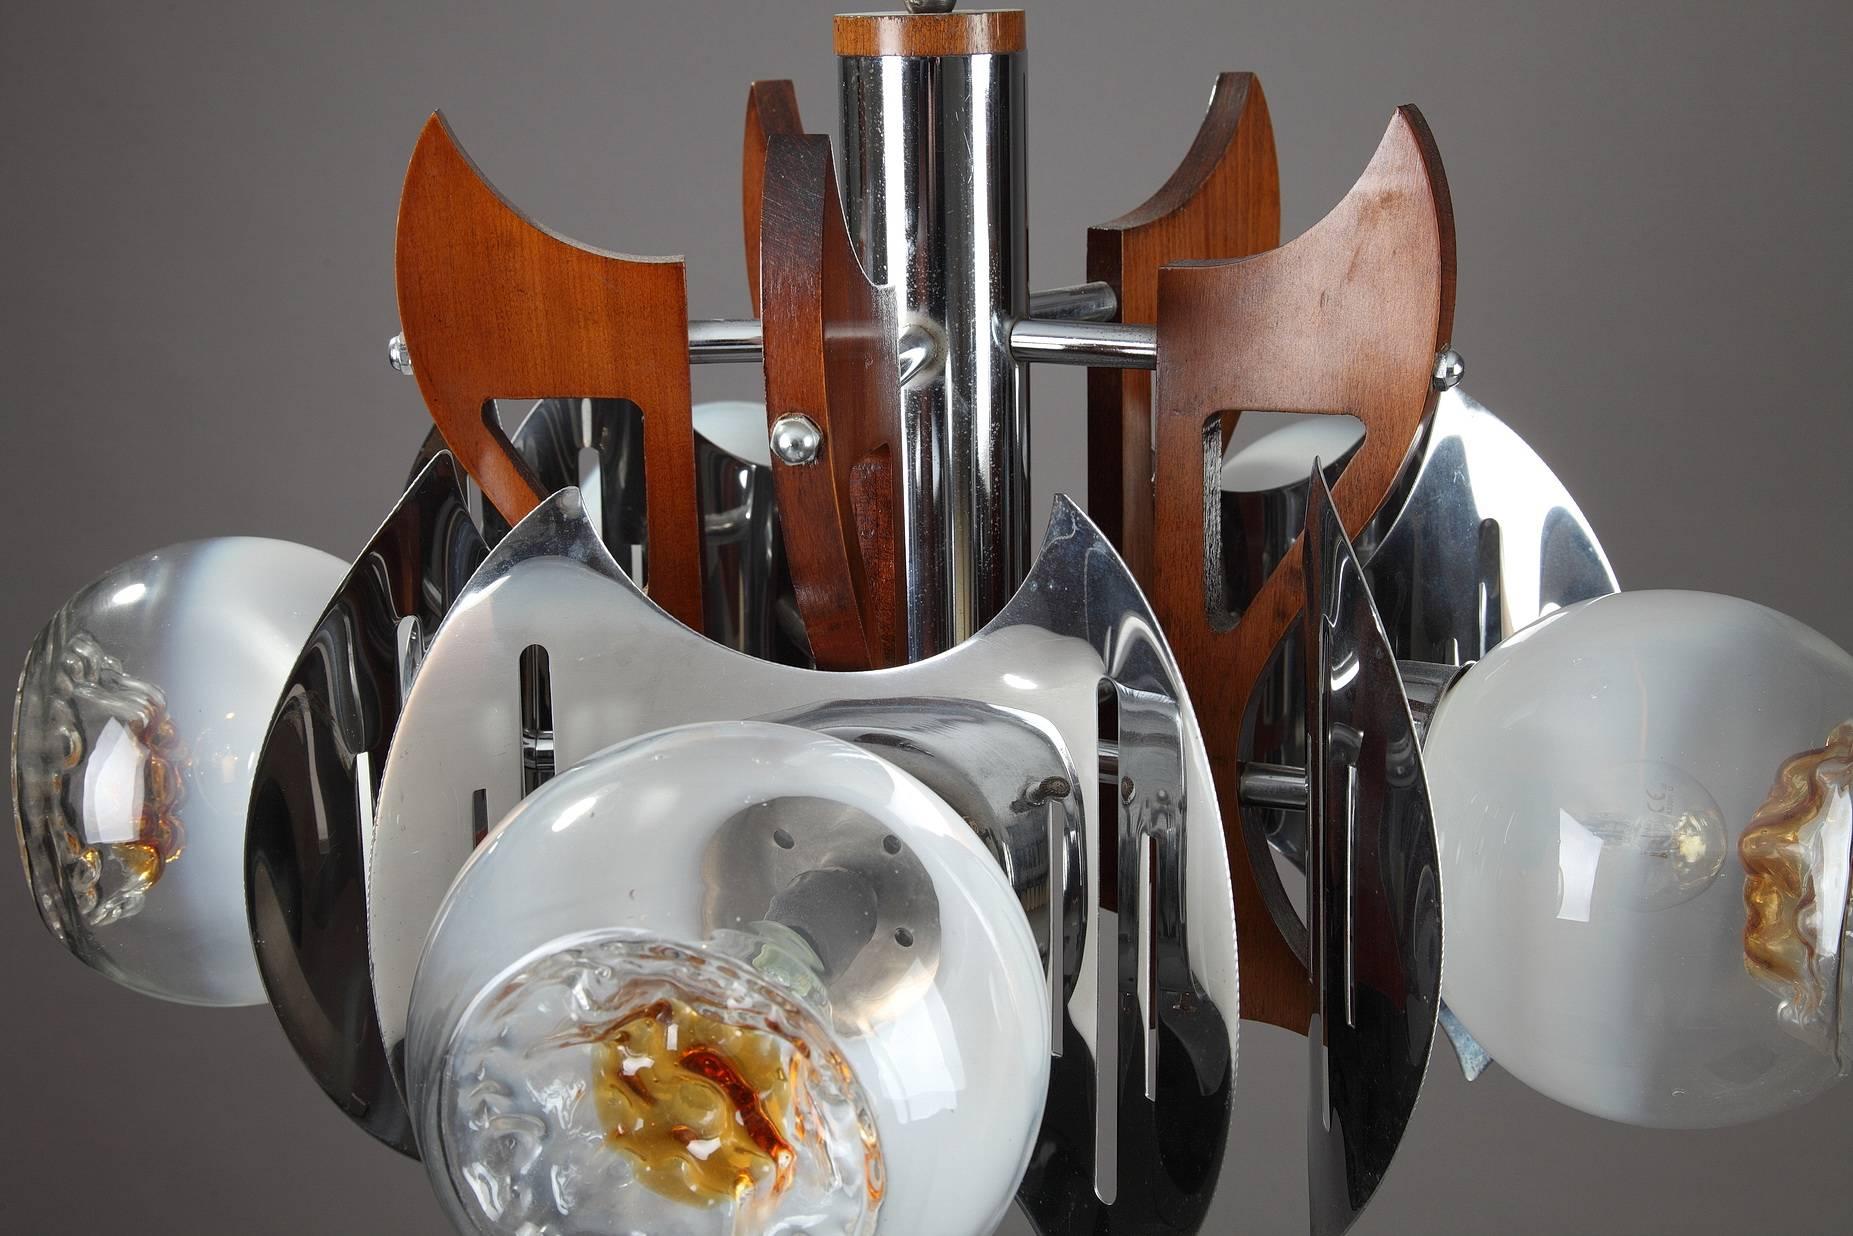 Plafonnier dans le style du designer italien Gaetano Sciolari (né en 1927). Structure en bois et métal chromé, avec cinq bras décorés de globes en verre de Murano. Fabriqué par la verrerie Mazzega (1929-1983) dans les années 1970,

vers